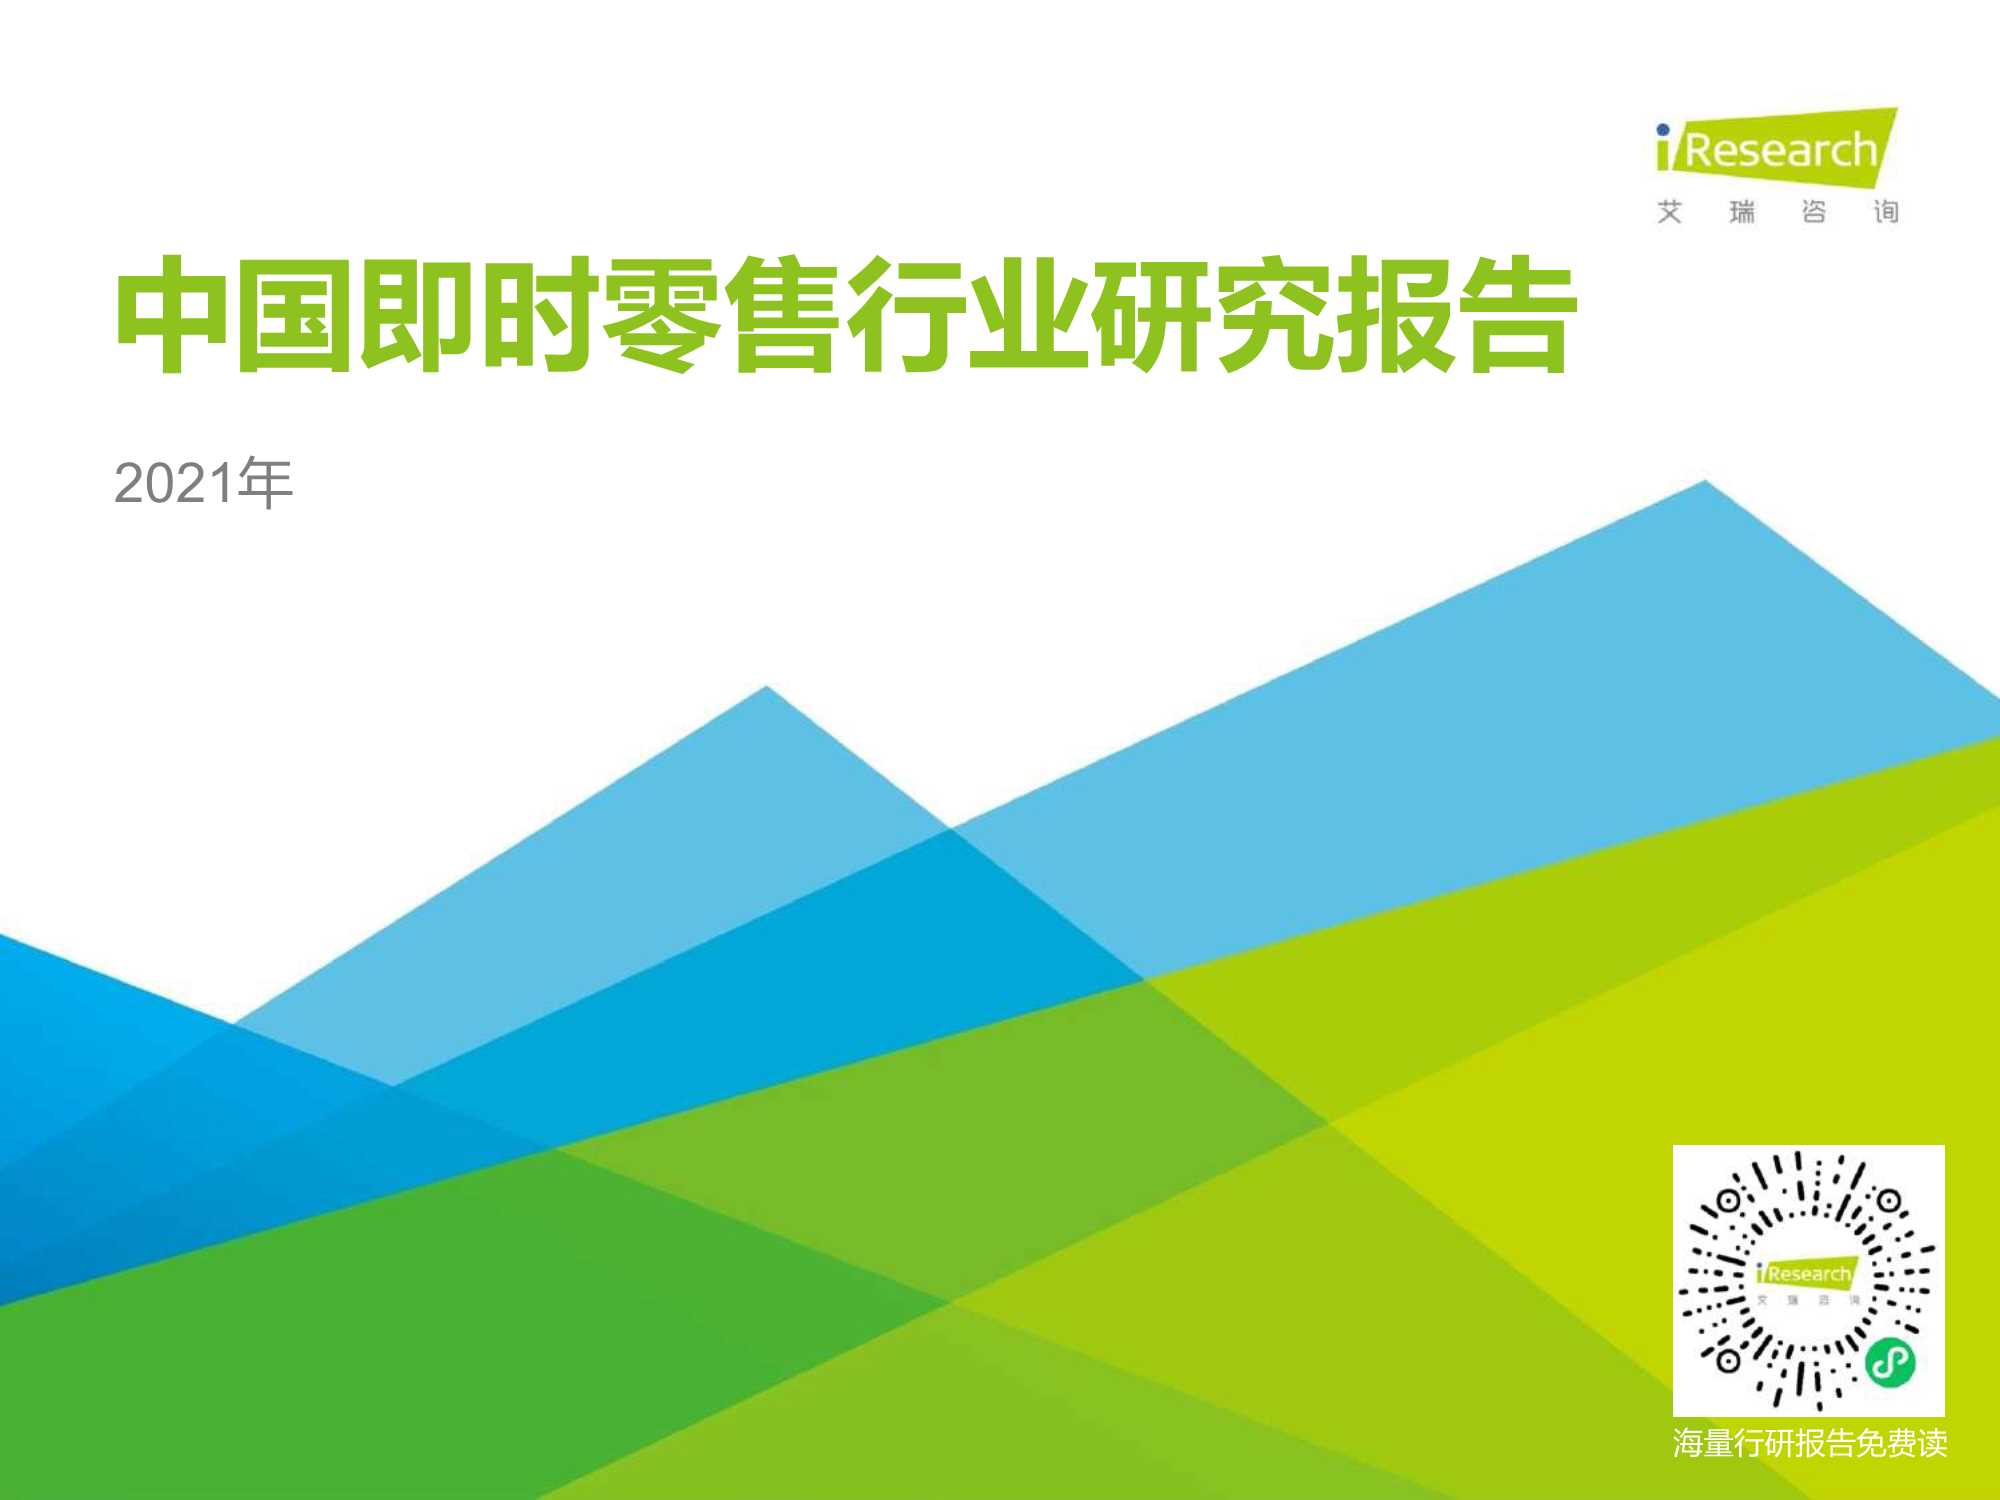 艾瑞咨询-2021年中国即时零售行业研究报告-2021.06-35页